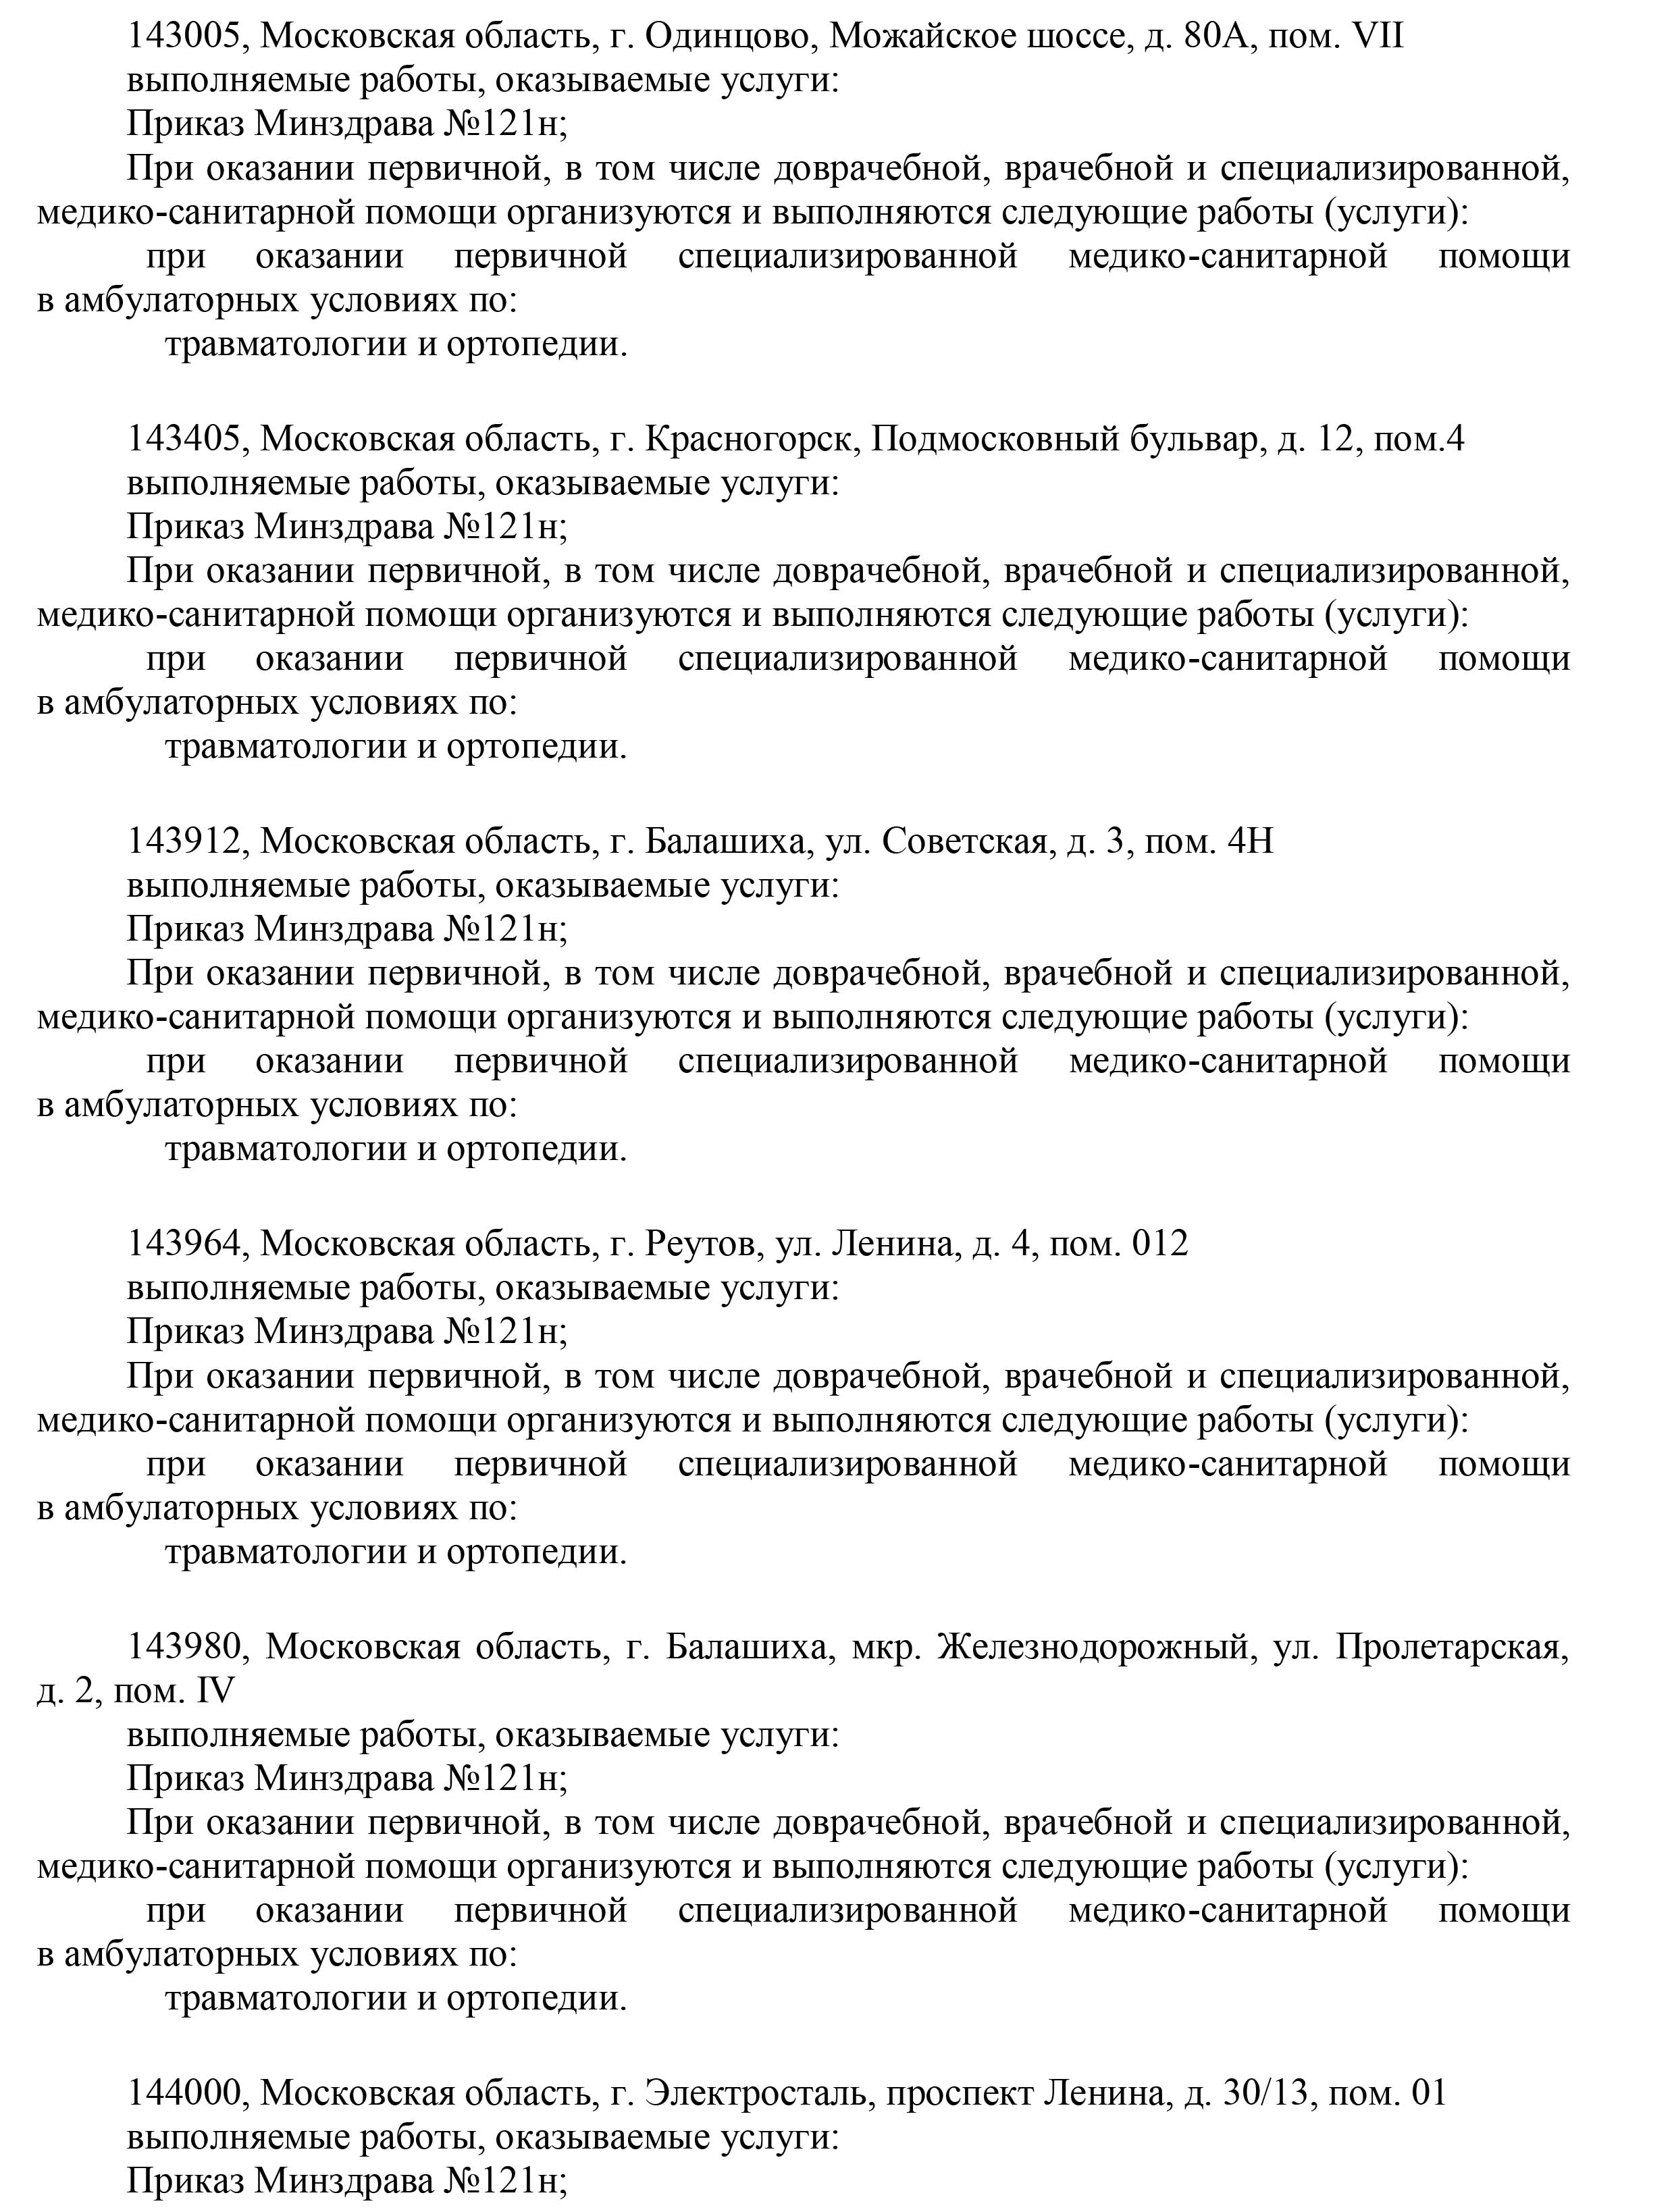 Лицензия Москва стр.16